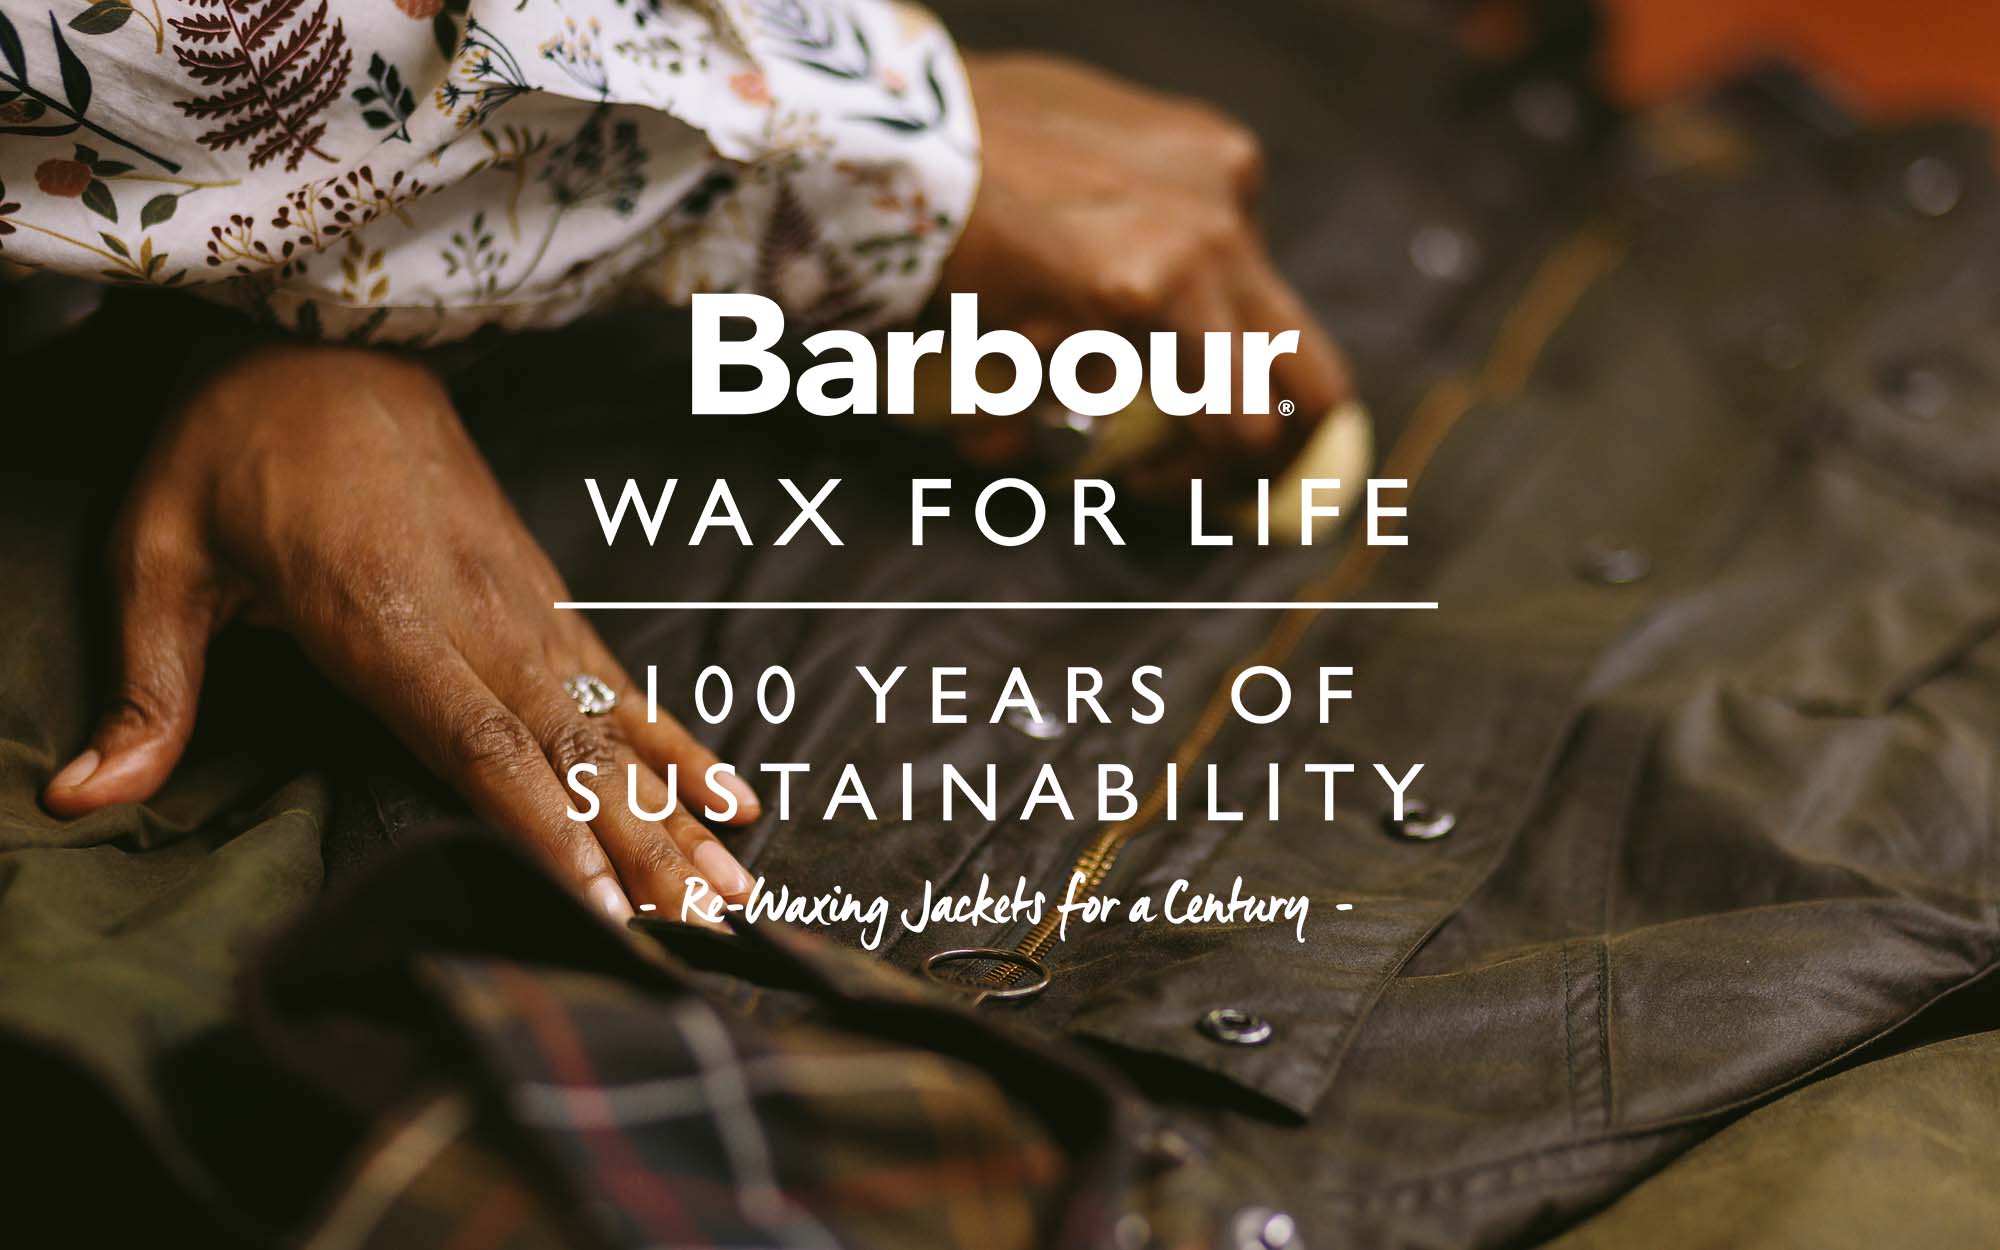 英国の老舗ブランド「Barbour」の世代を超えて愛されるサスティナブルな試み『Barbour. WAX FOR LIFE』、9月1日より順次スタートのサブ画像1